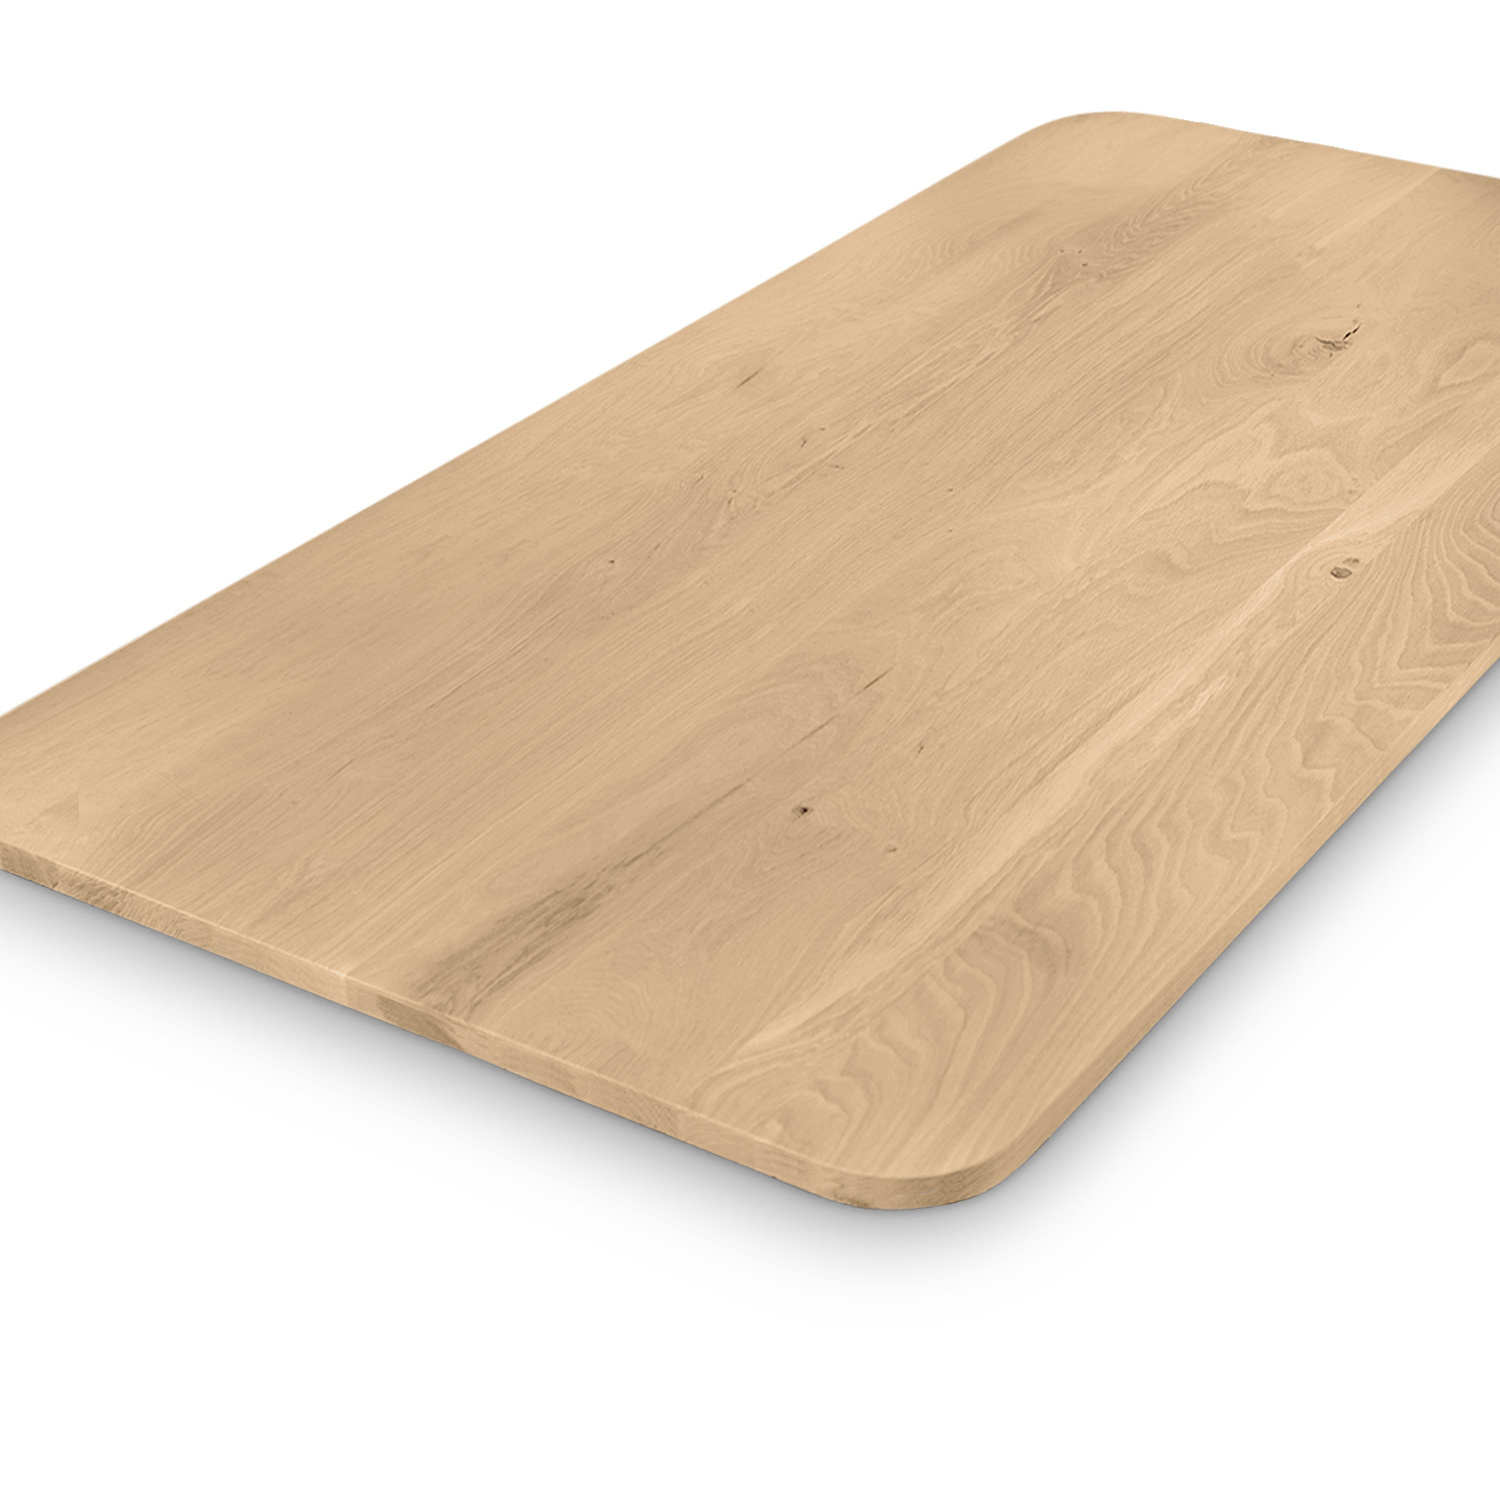  Tischplatte Eiche - mit runden Ecken - 2,7 cm dick (1-Schicht) - Breite Lamellen (10 - 12 cm breit) - Eichenholz rustikal - verleimt & künstlich getrocknet (HF 8-12%) - mit abgerundeten Kanten - verschiedene Größen